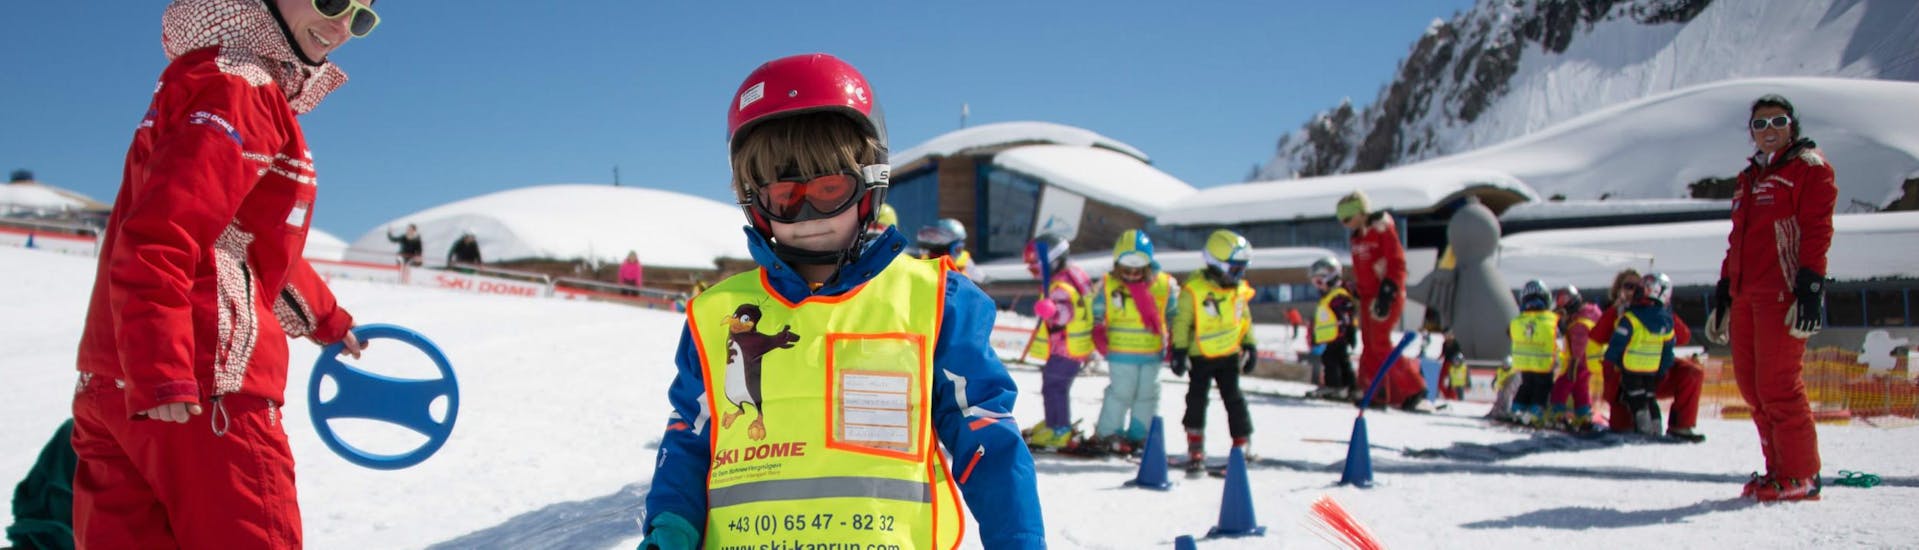 Un bambino che impara a sciare durante le lezioni di sci per bambini "BOBOs Kids Club" (4-15 anni) per principianti con lo Ski Dome Oberschneider Kaprun.